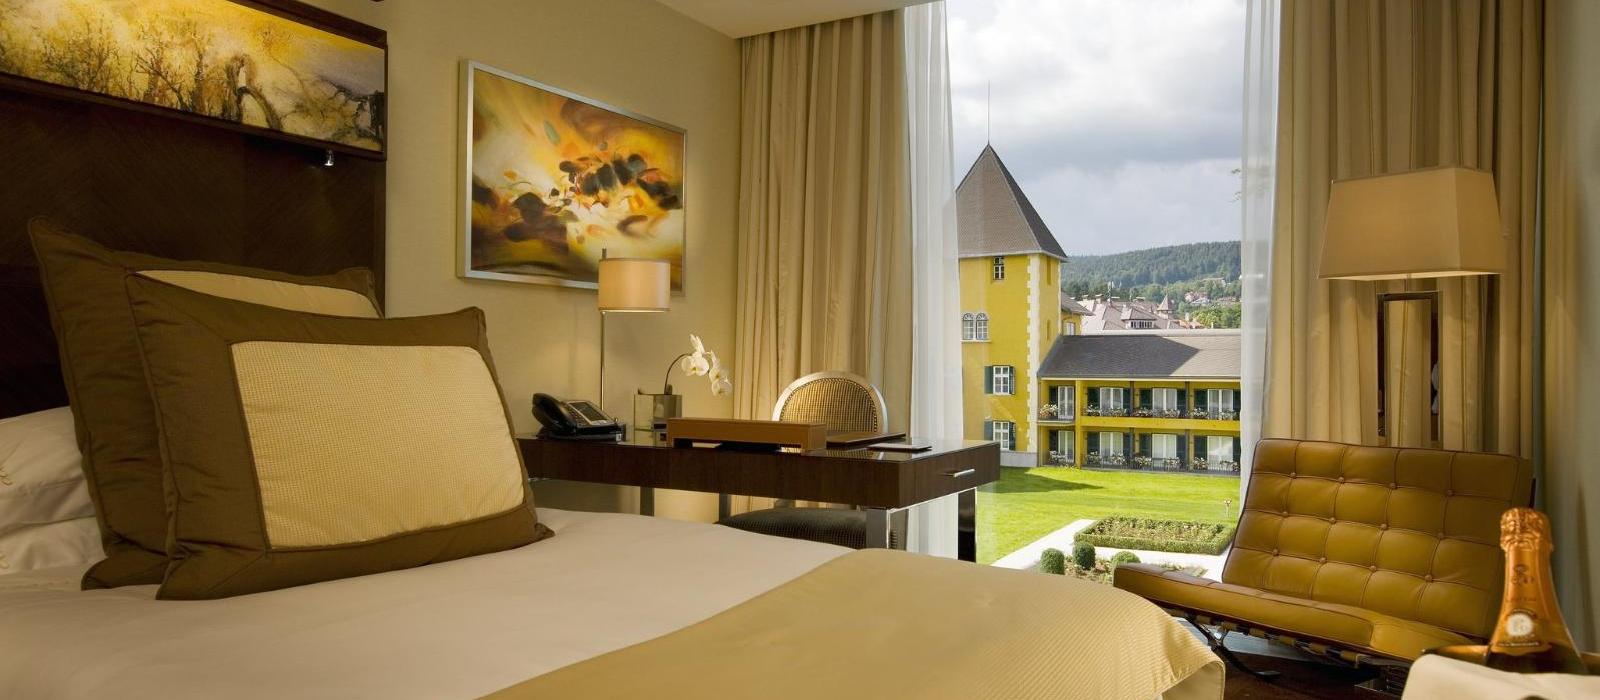 韦尔登弗肯斯坦纳城堡酒店(Falkensteiner Schlosshotel Velden) 标准客房图片  www.lhw.cn